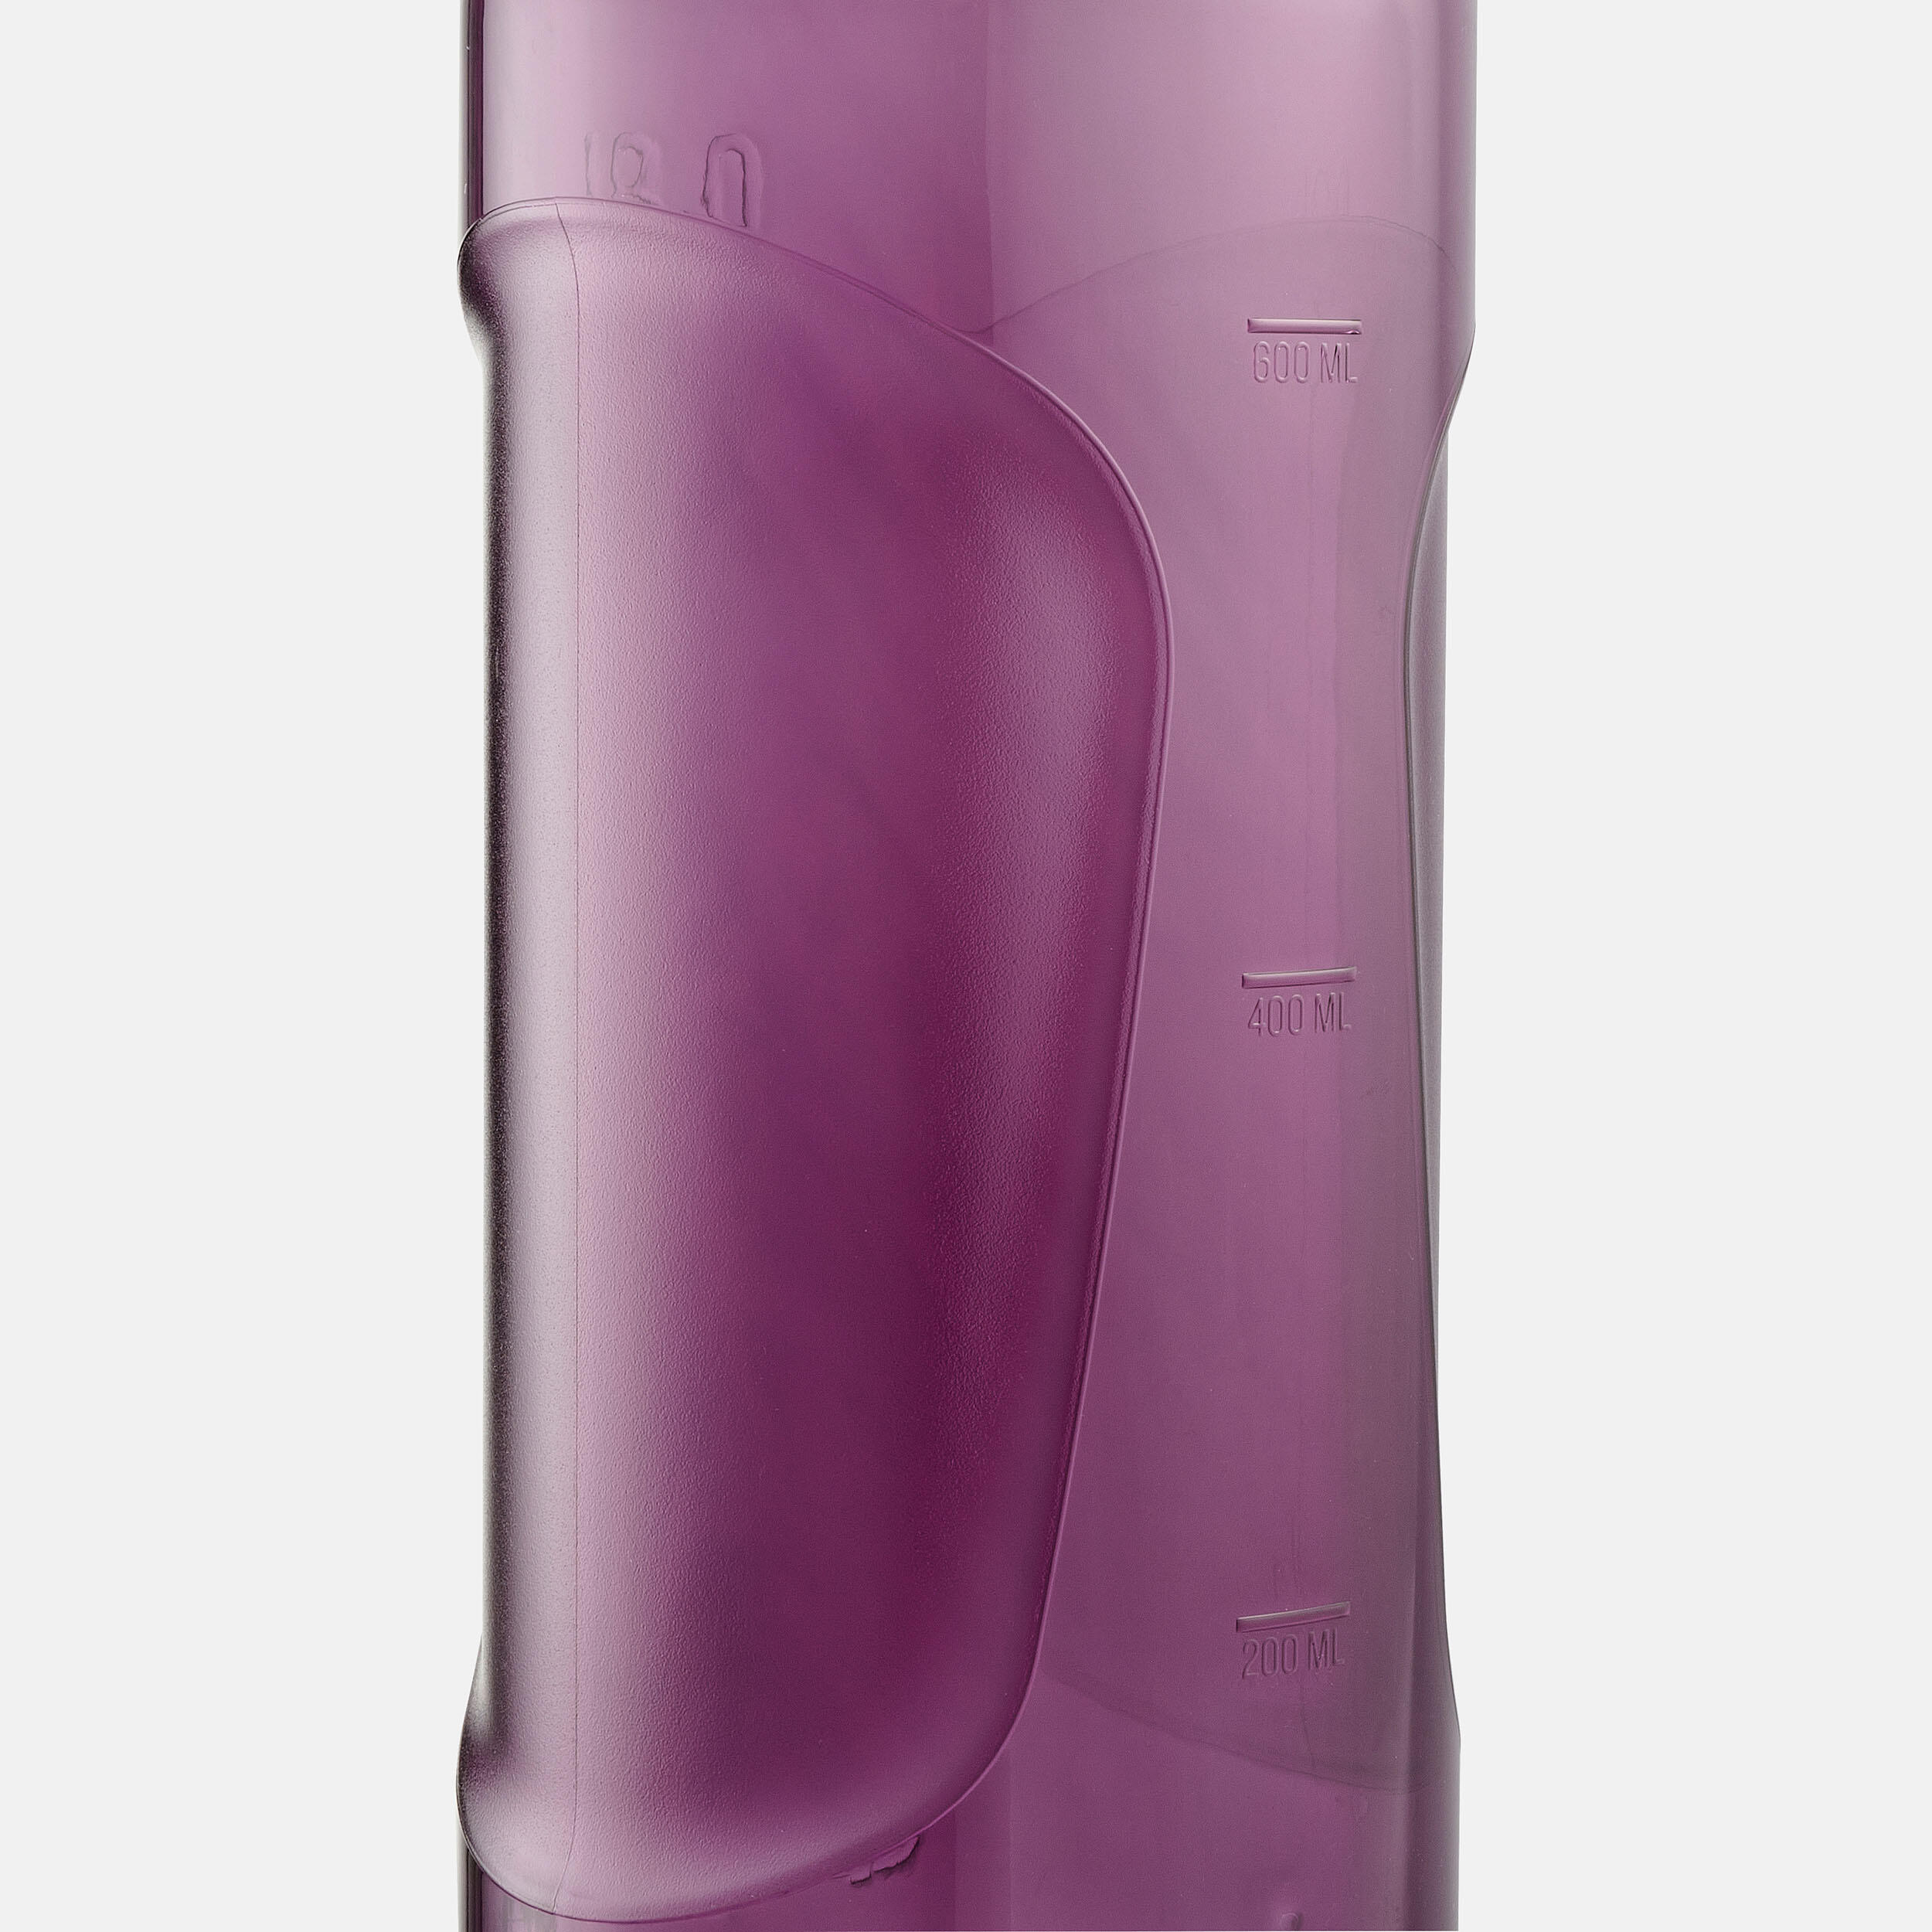 Gourde rando MH500 bouchon ouverture rapide 0,8 litre plastique (Ecozen®) violet